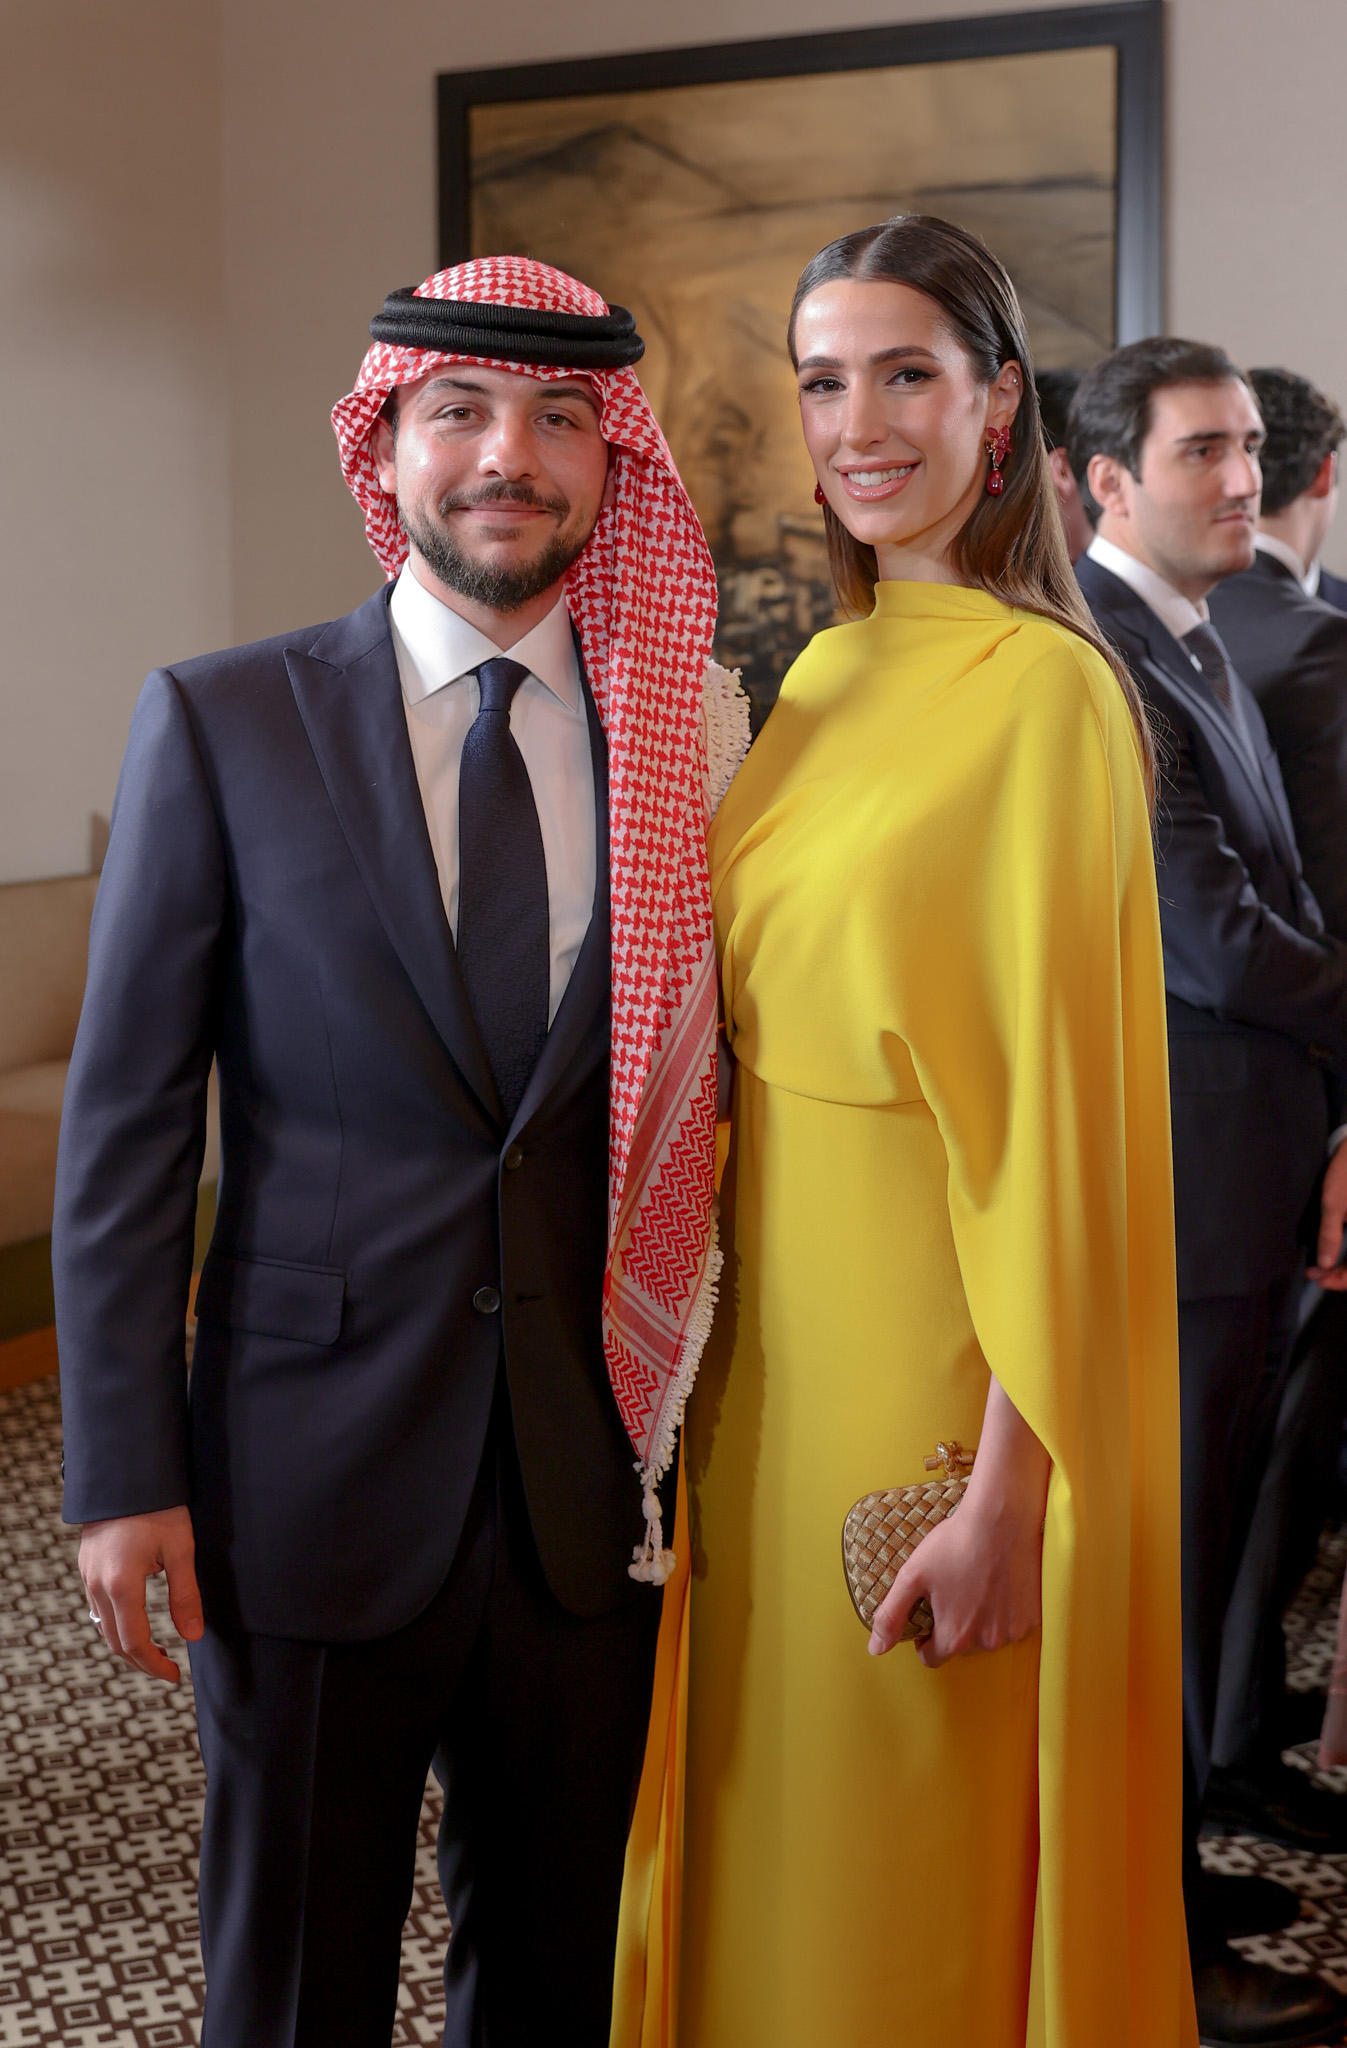 Prințesa Rajwa și Prințul Hussein al Iordaniei în timp ce poează împreună la un eveniment public